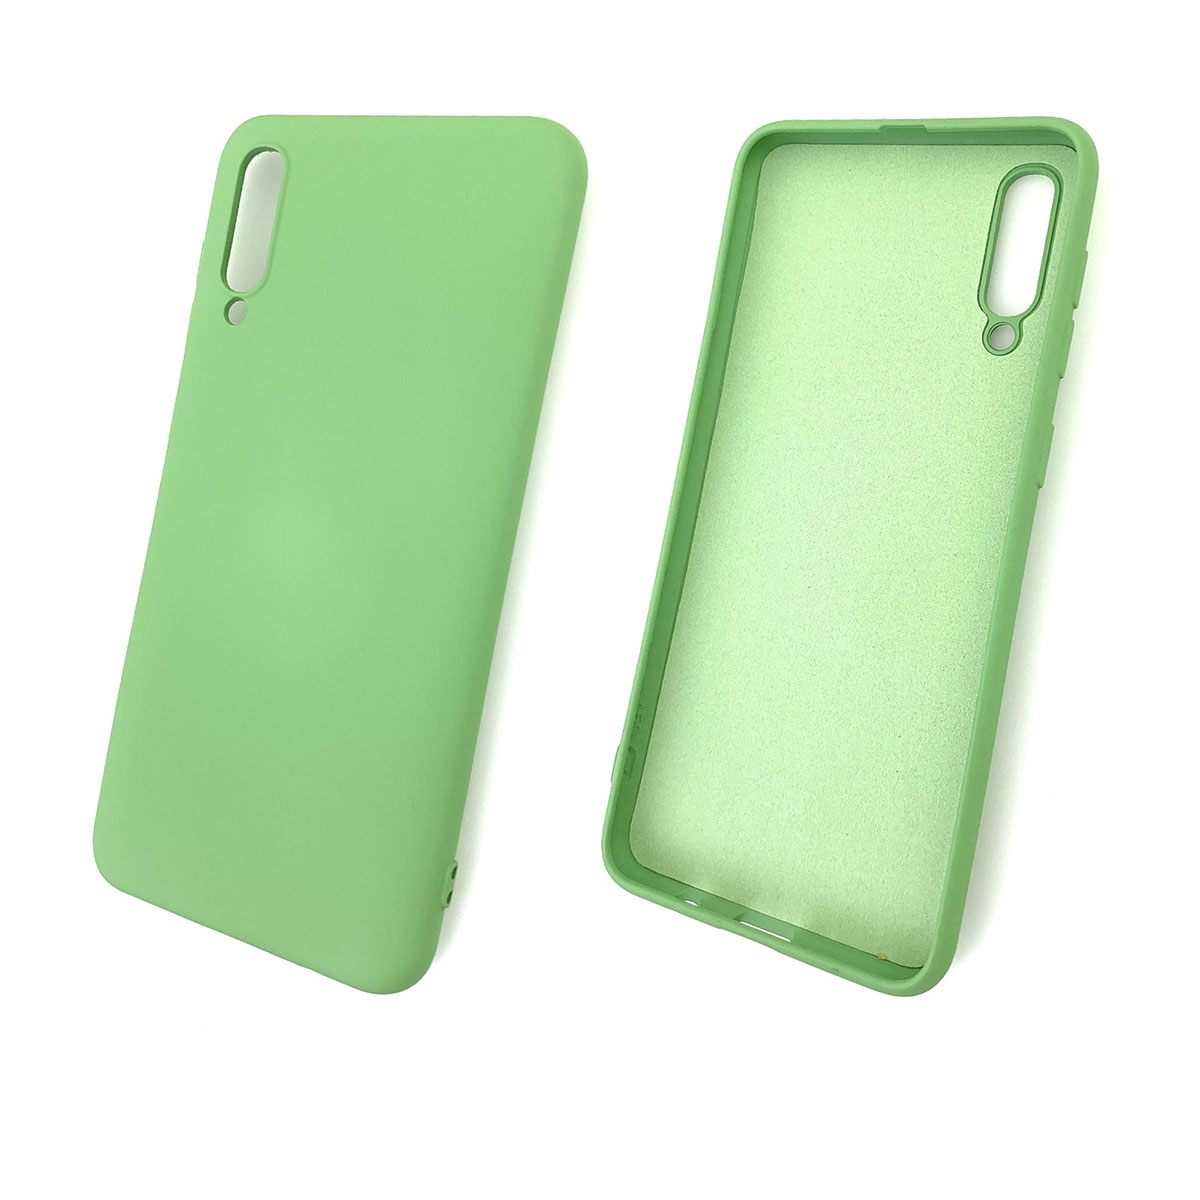 Чехол накладка Soft Touch для SAMSUNG Galaxy A50 (SM-A505), A30s (SM-A307), A50s (SM-A507), силикон, цвет фисташковый.